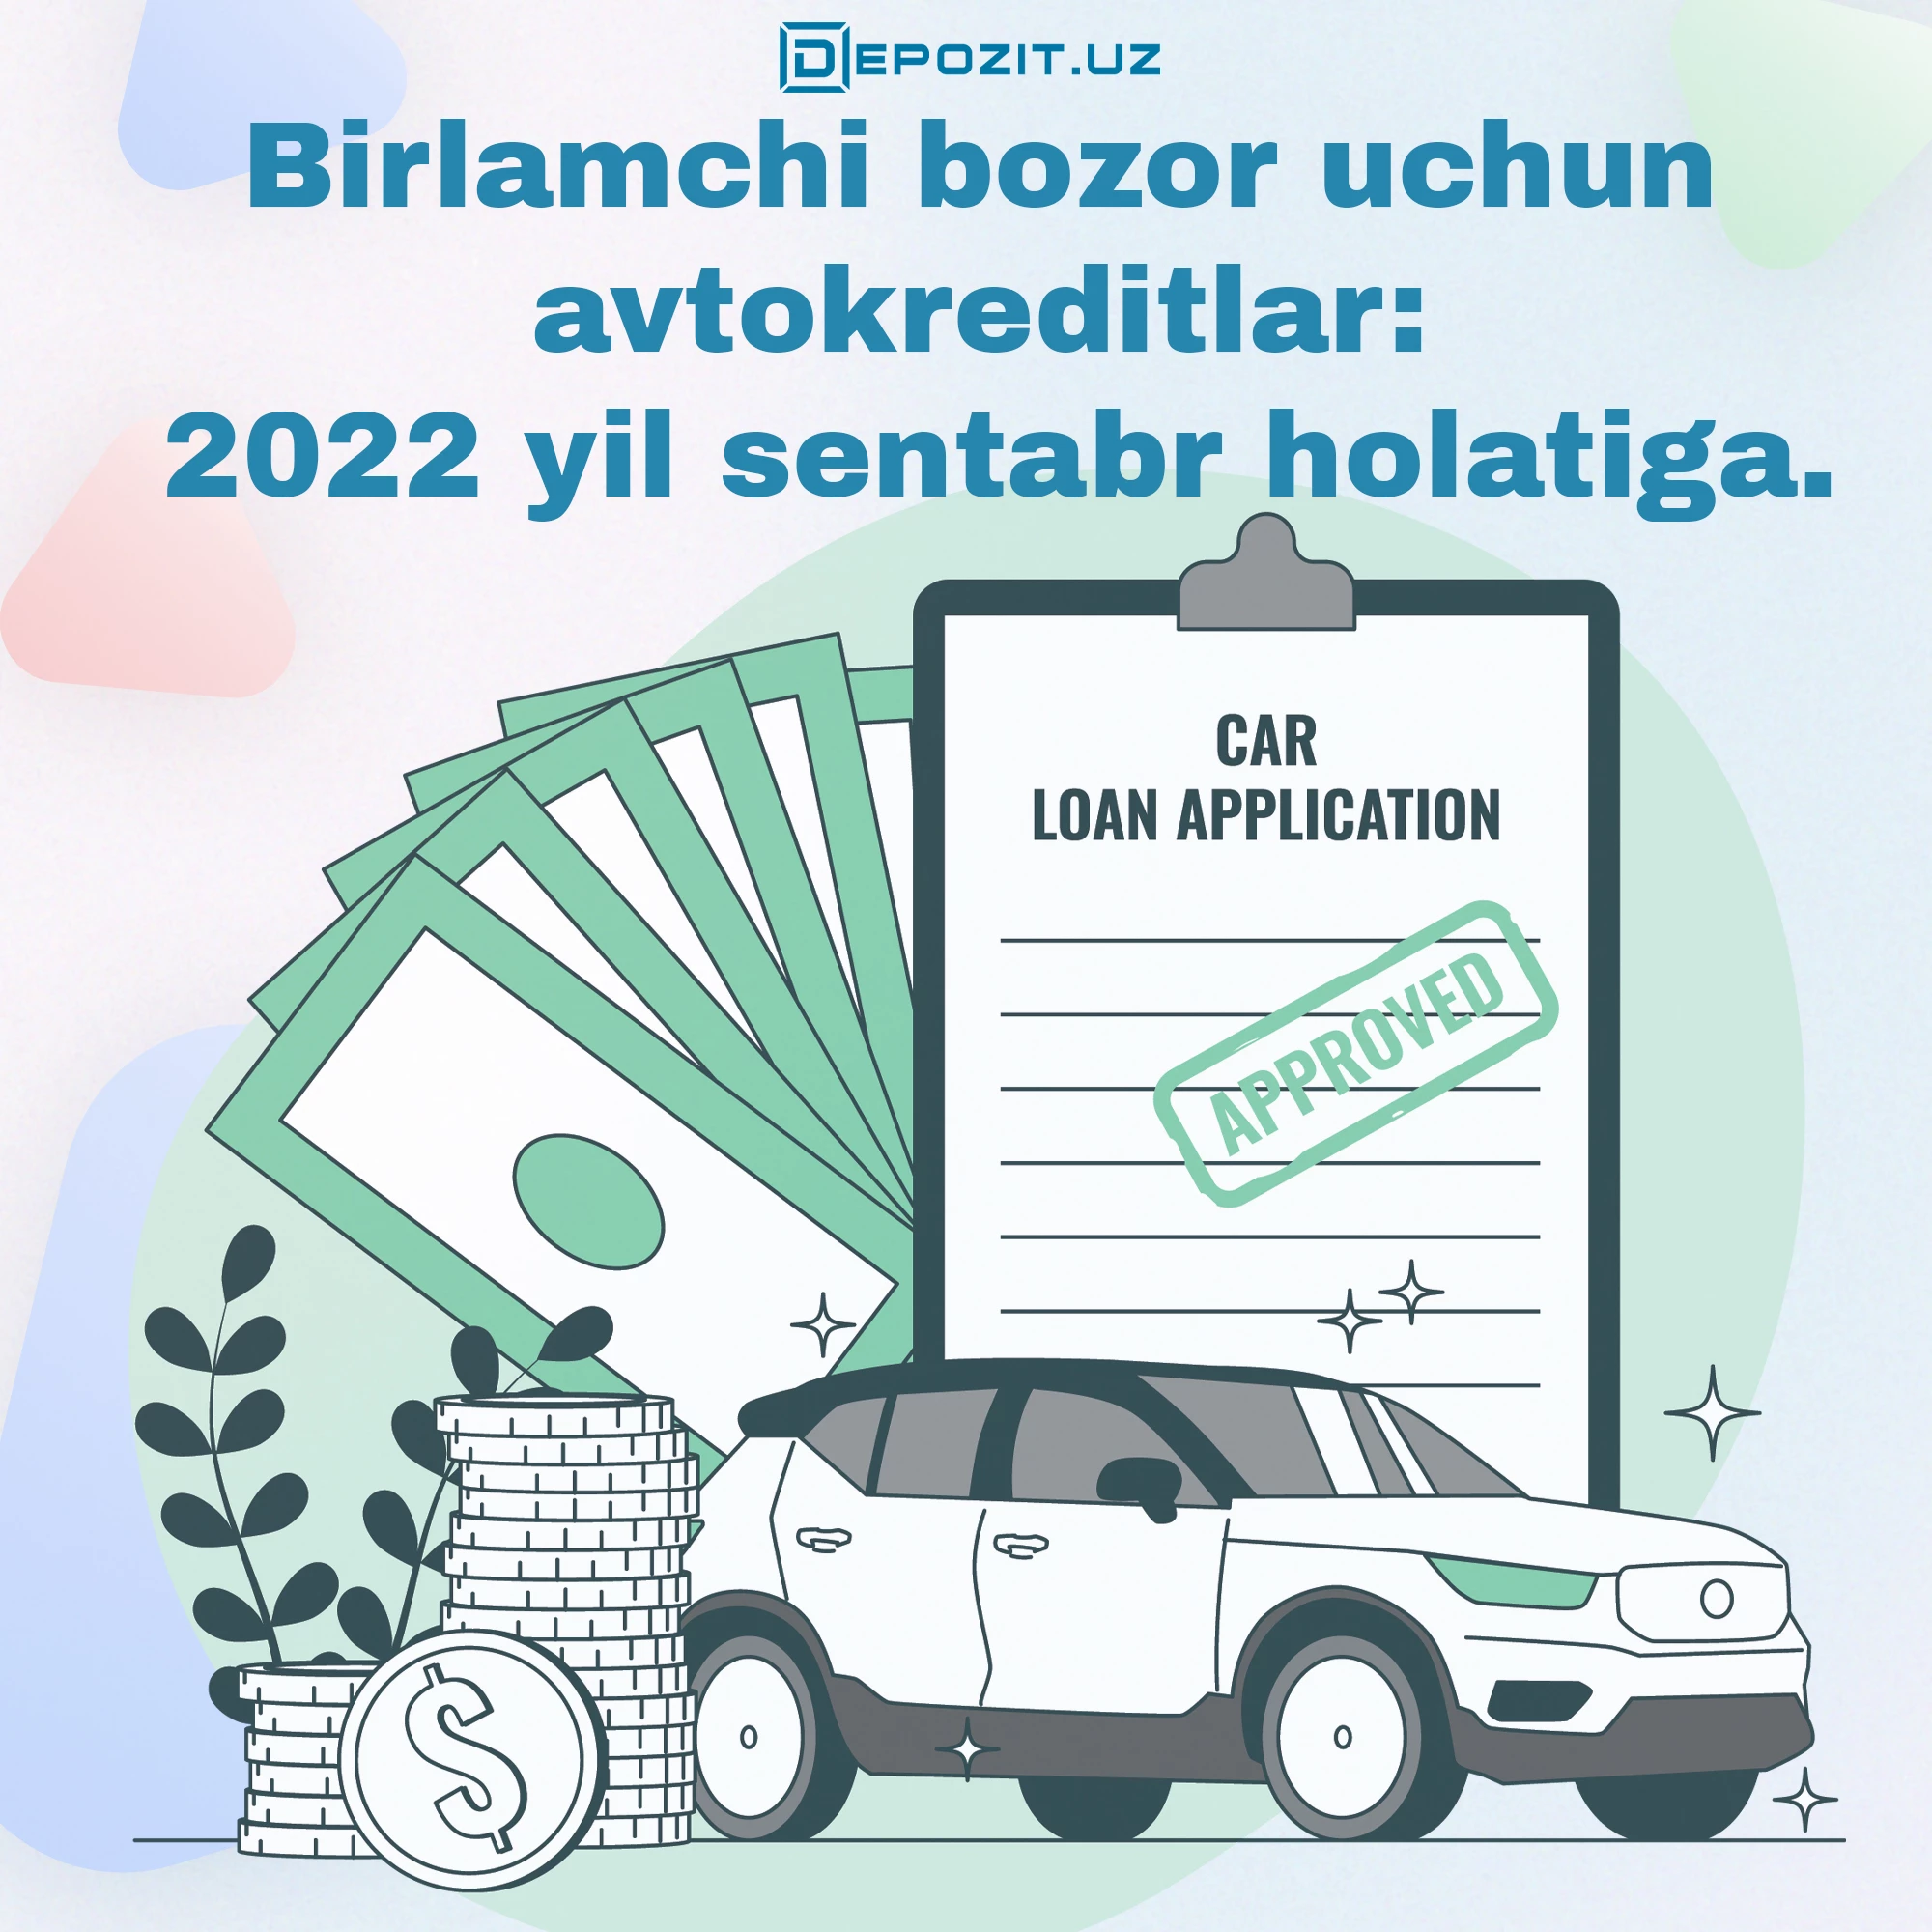 depozit.uz Birlamchi bozor uchun avtokreditlar: 2022 yil sentabr holatiga.